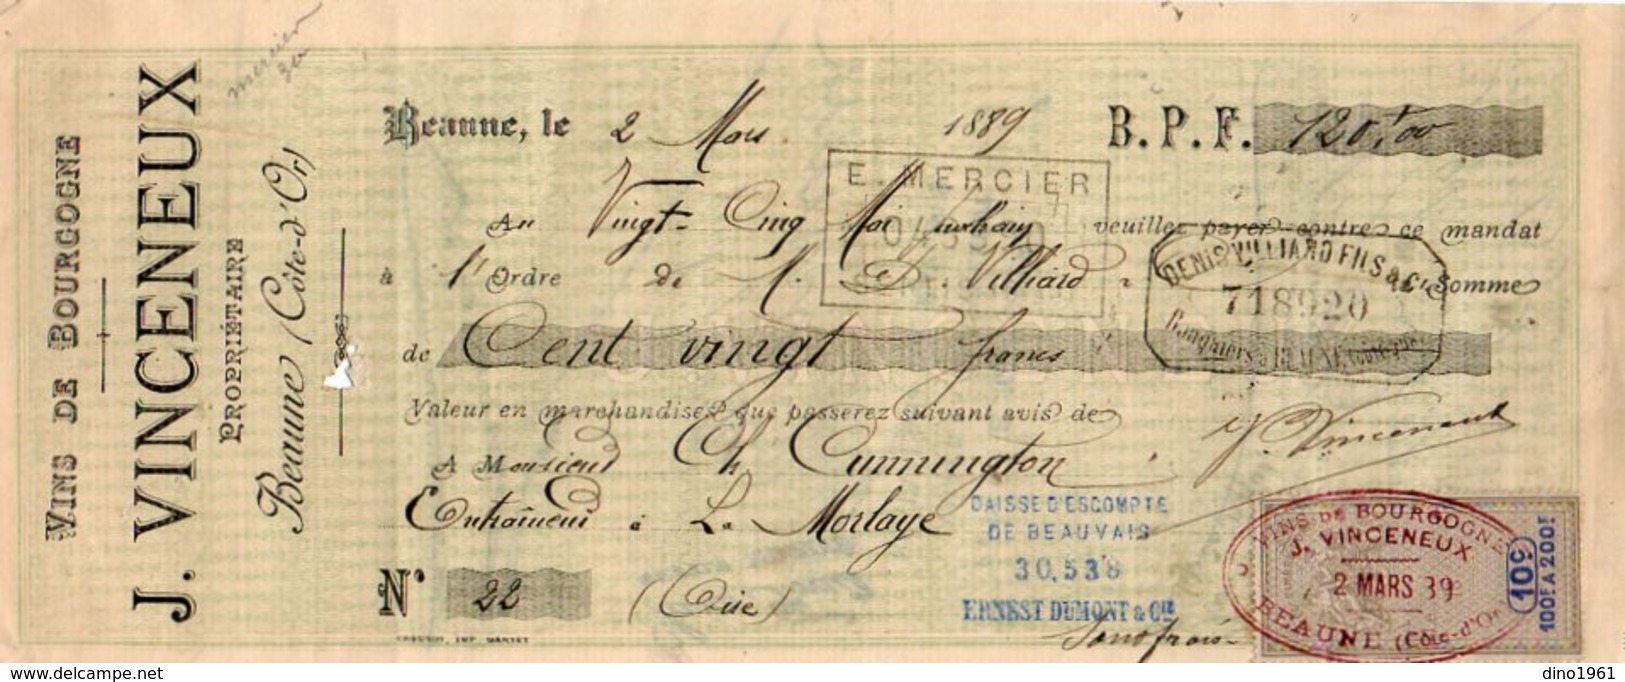 VP10.114 -  Lettre De Change - Vins Fins & Ordinaires De Bourgogne J. VINCENEUX à BEAUNE - Lettres De Change